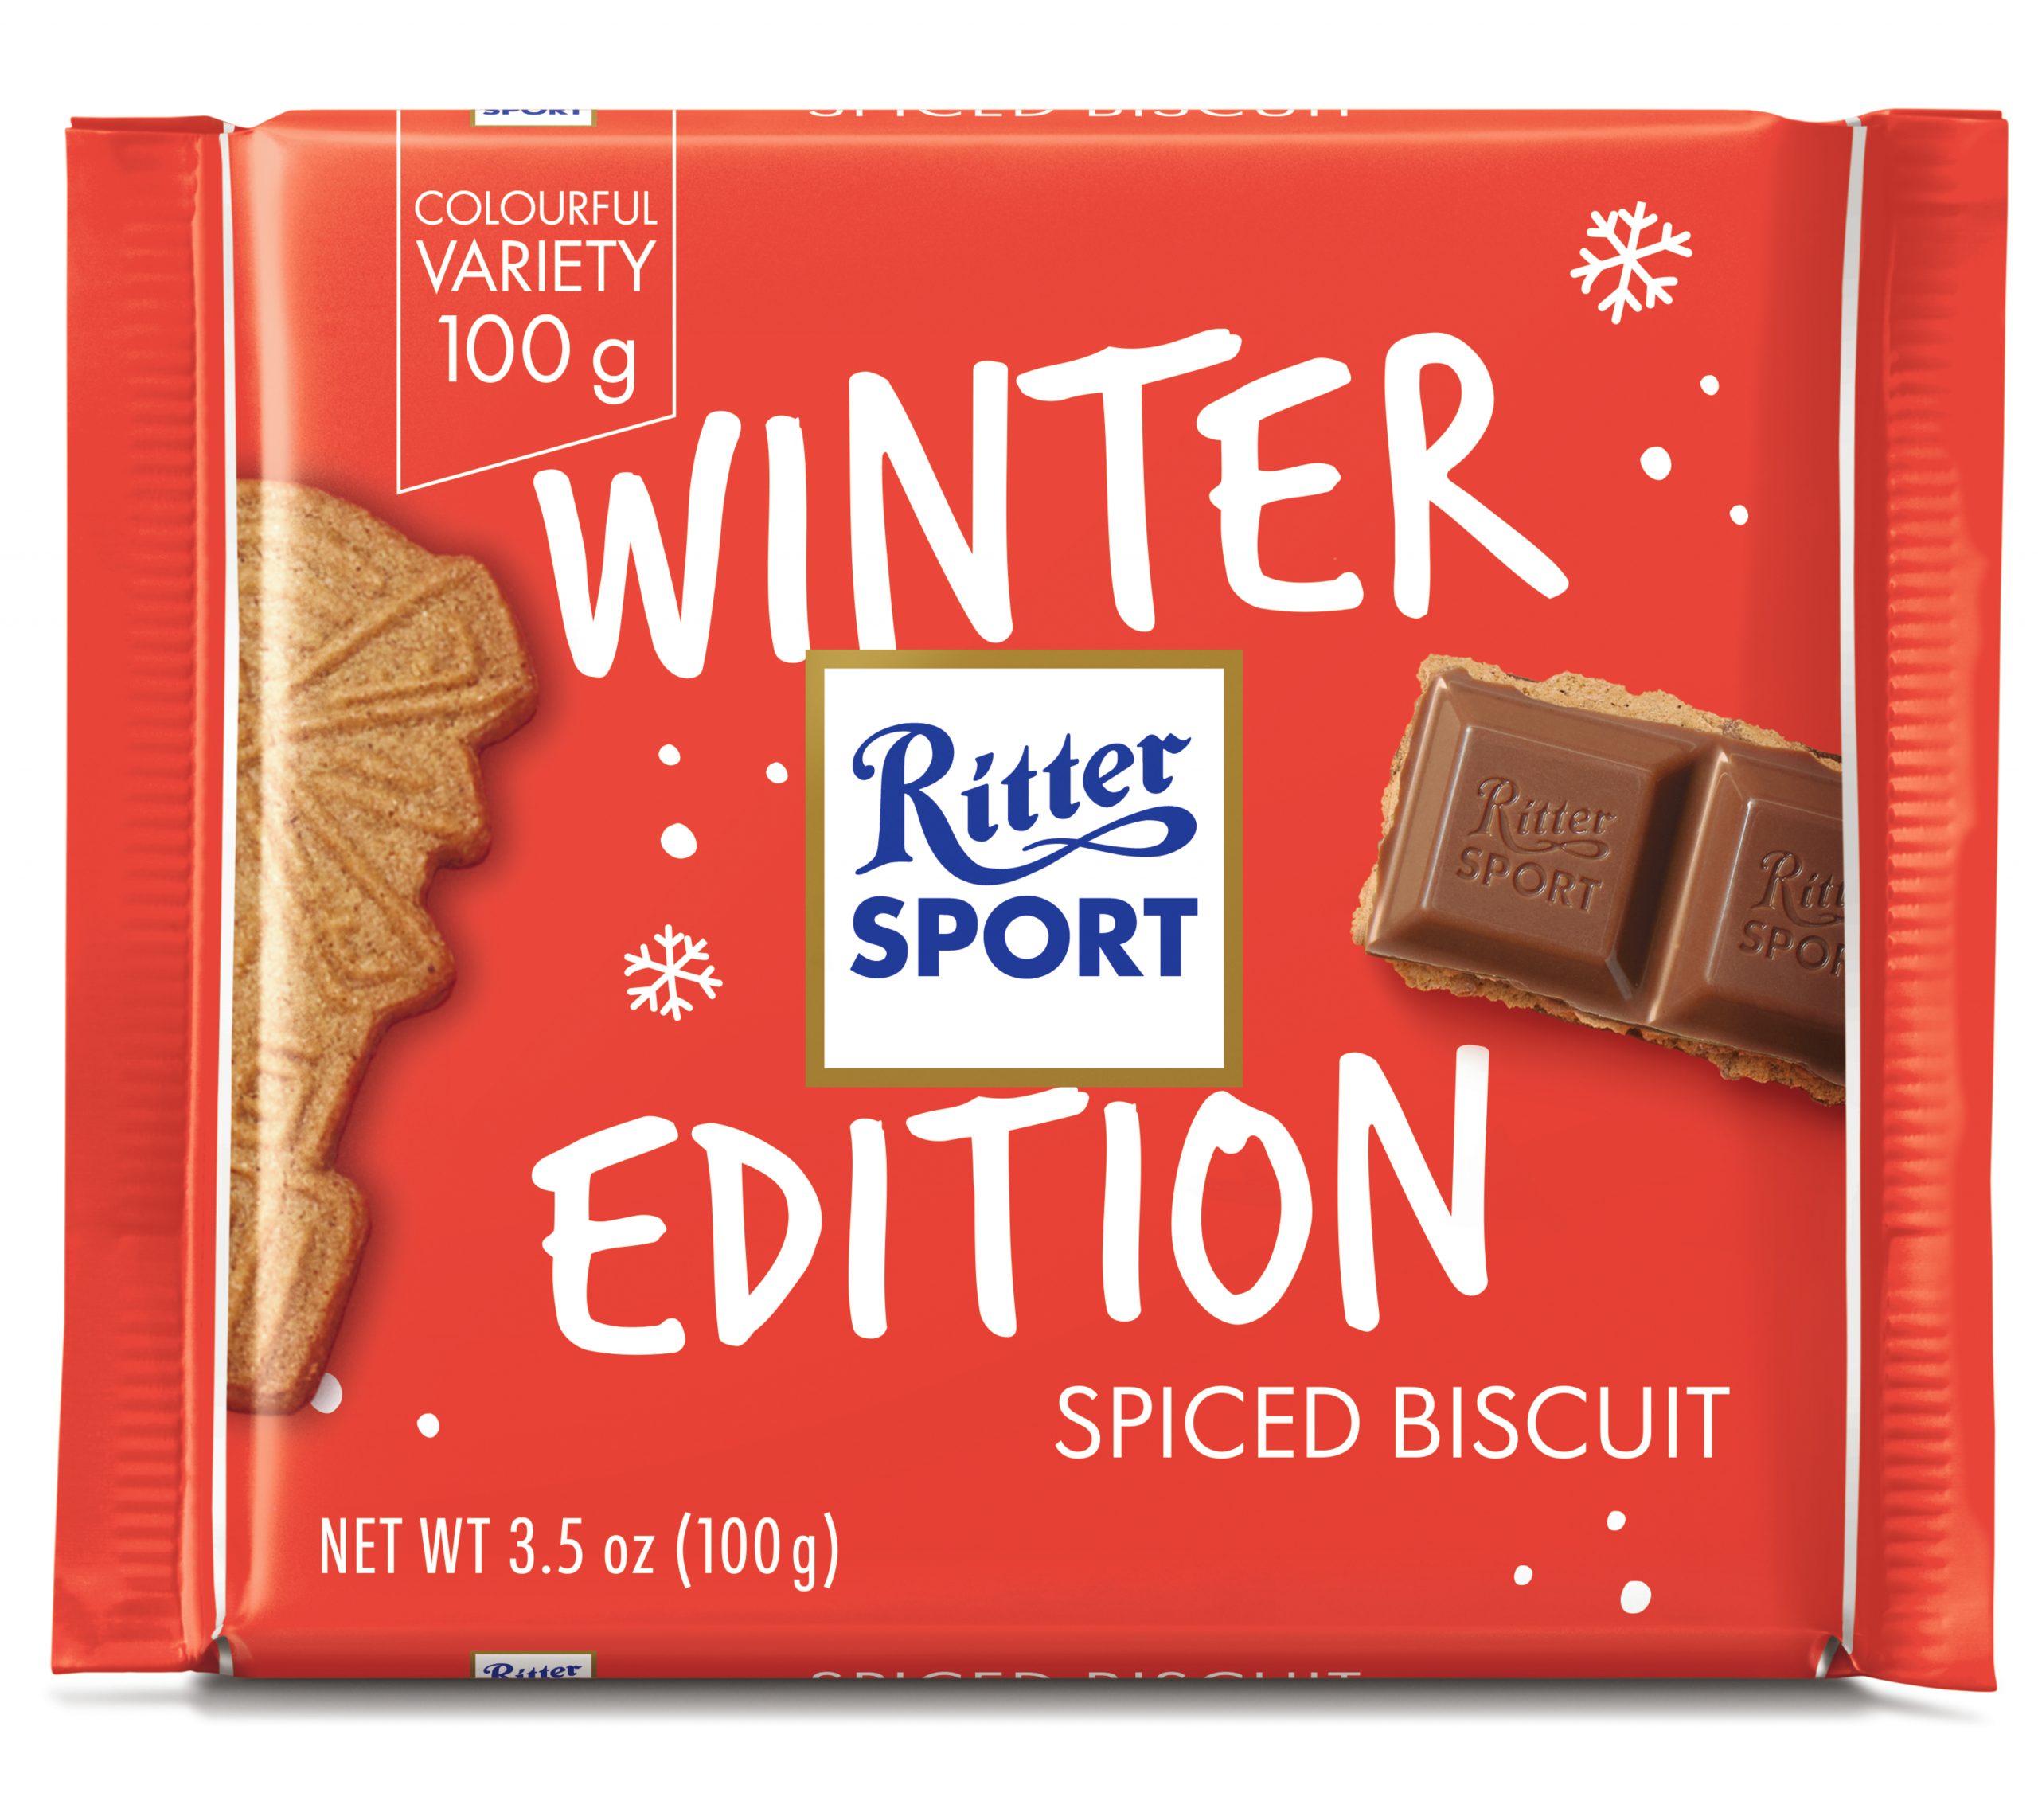 Ritter Sport’s festive range to set Christmas tills ringing